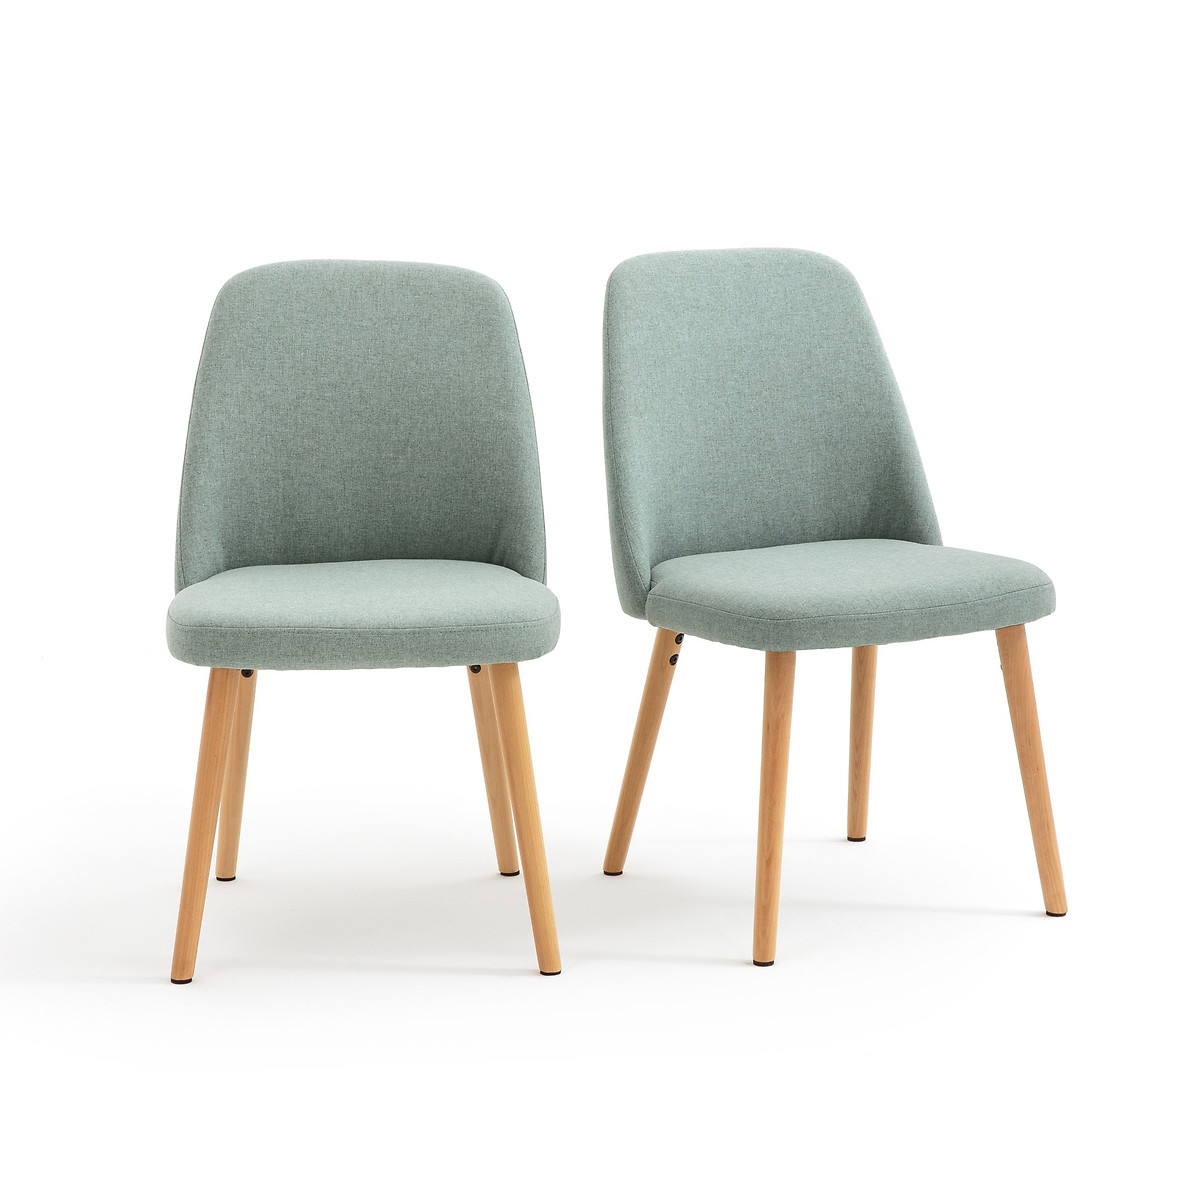 Комплект из 2 стульев, Jimi La Redoute единый размер зеленый комплект стульев кукки зеленый зеленый